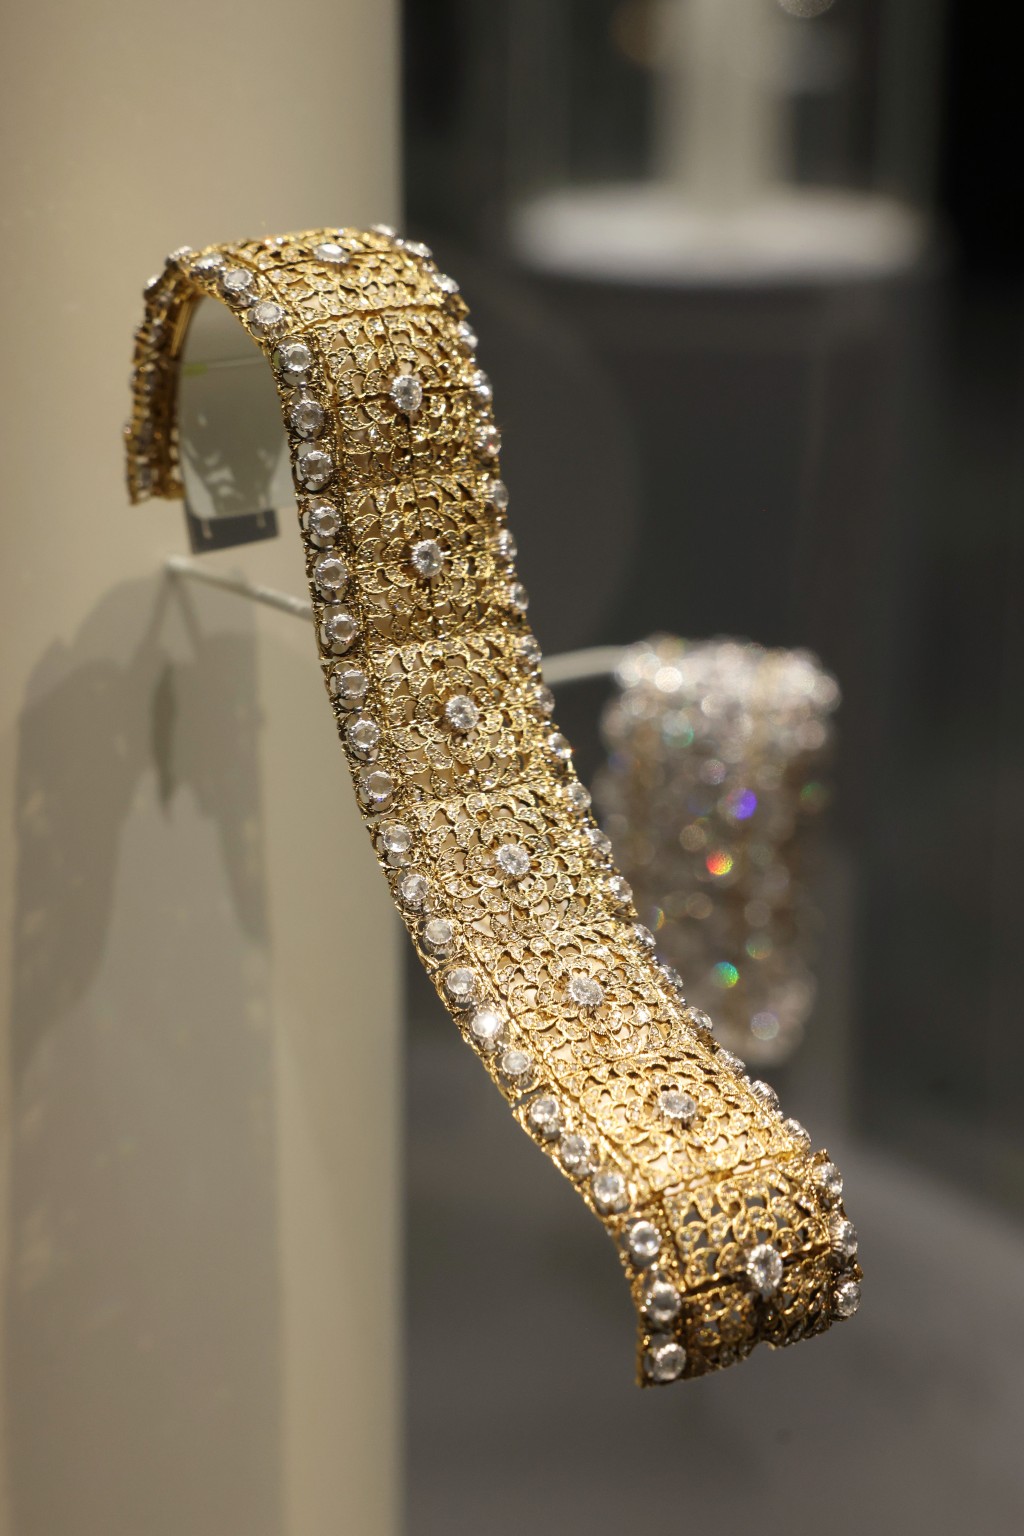 以黄金打造成喱士效果再镶嵌钻石的珠宝作品，凸显Buccellati的标志性风格。